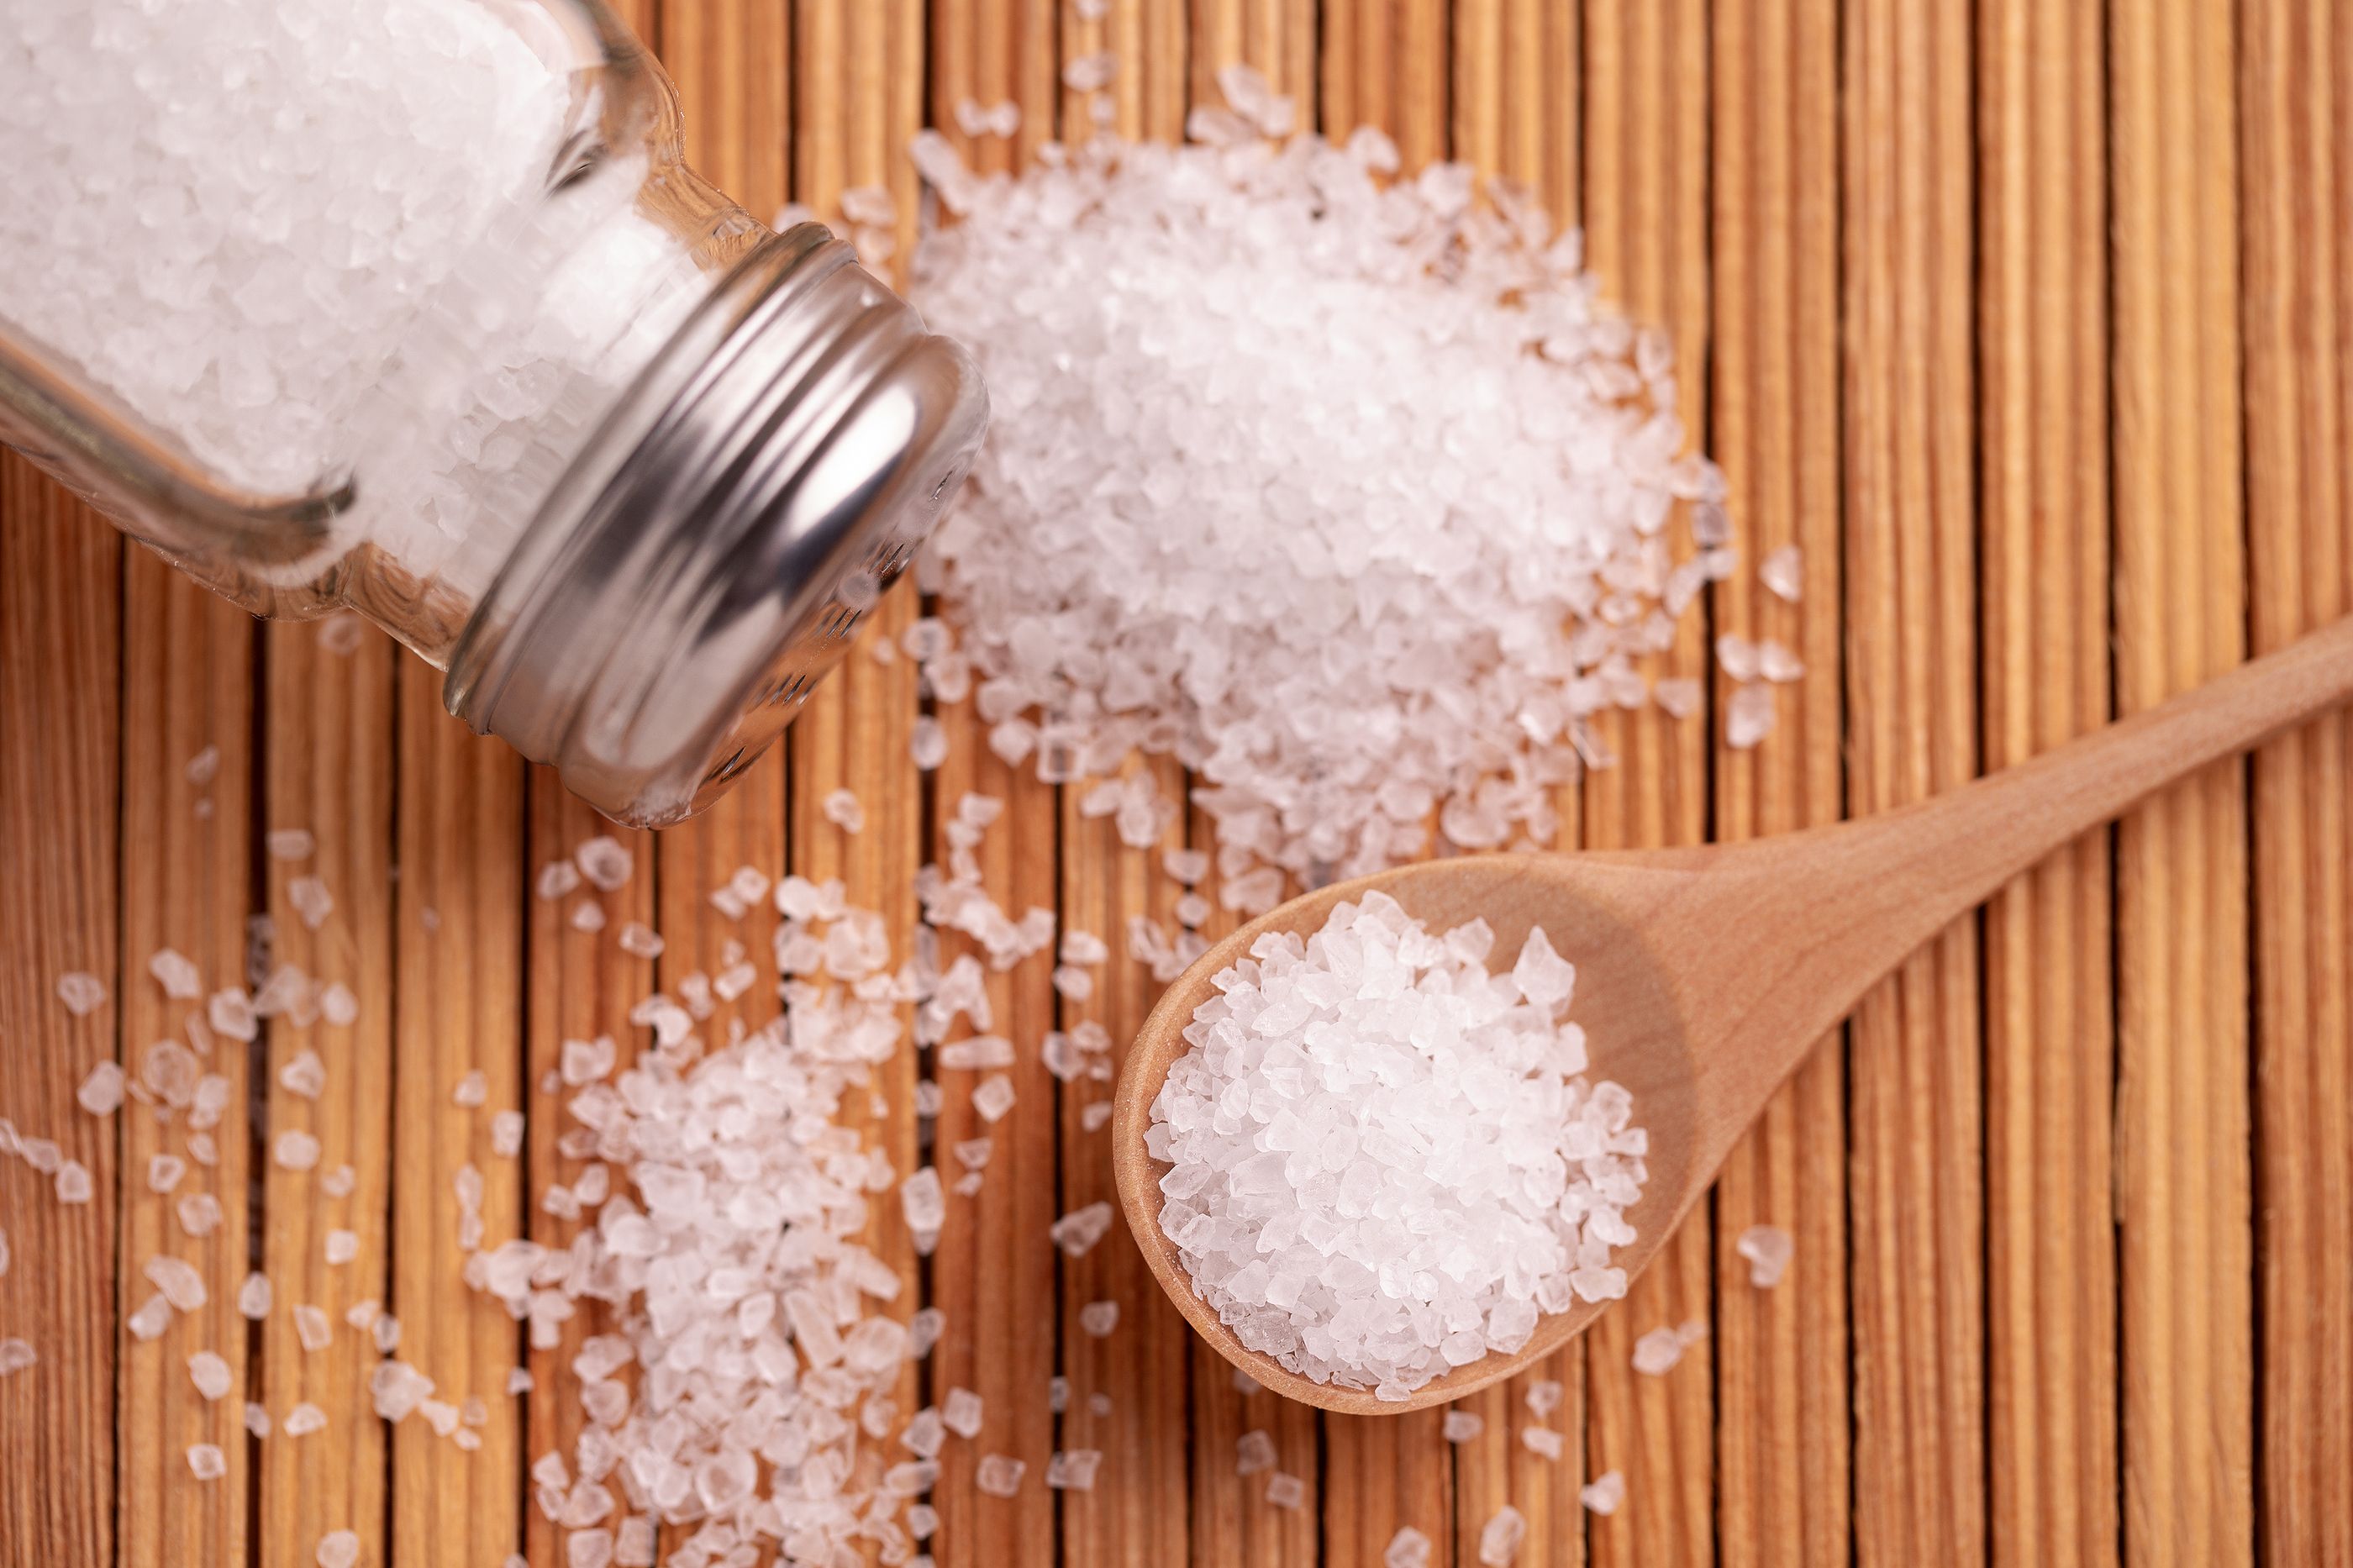 Cuidado con abusar de la sal: aumenta en un 40% el riesgo de cáncer de estómago (Bigstock)